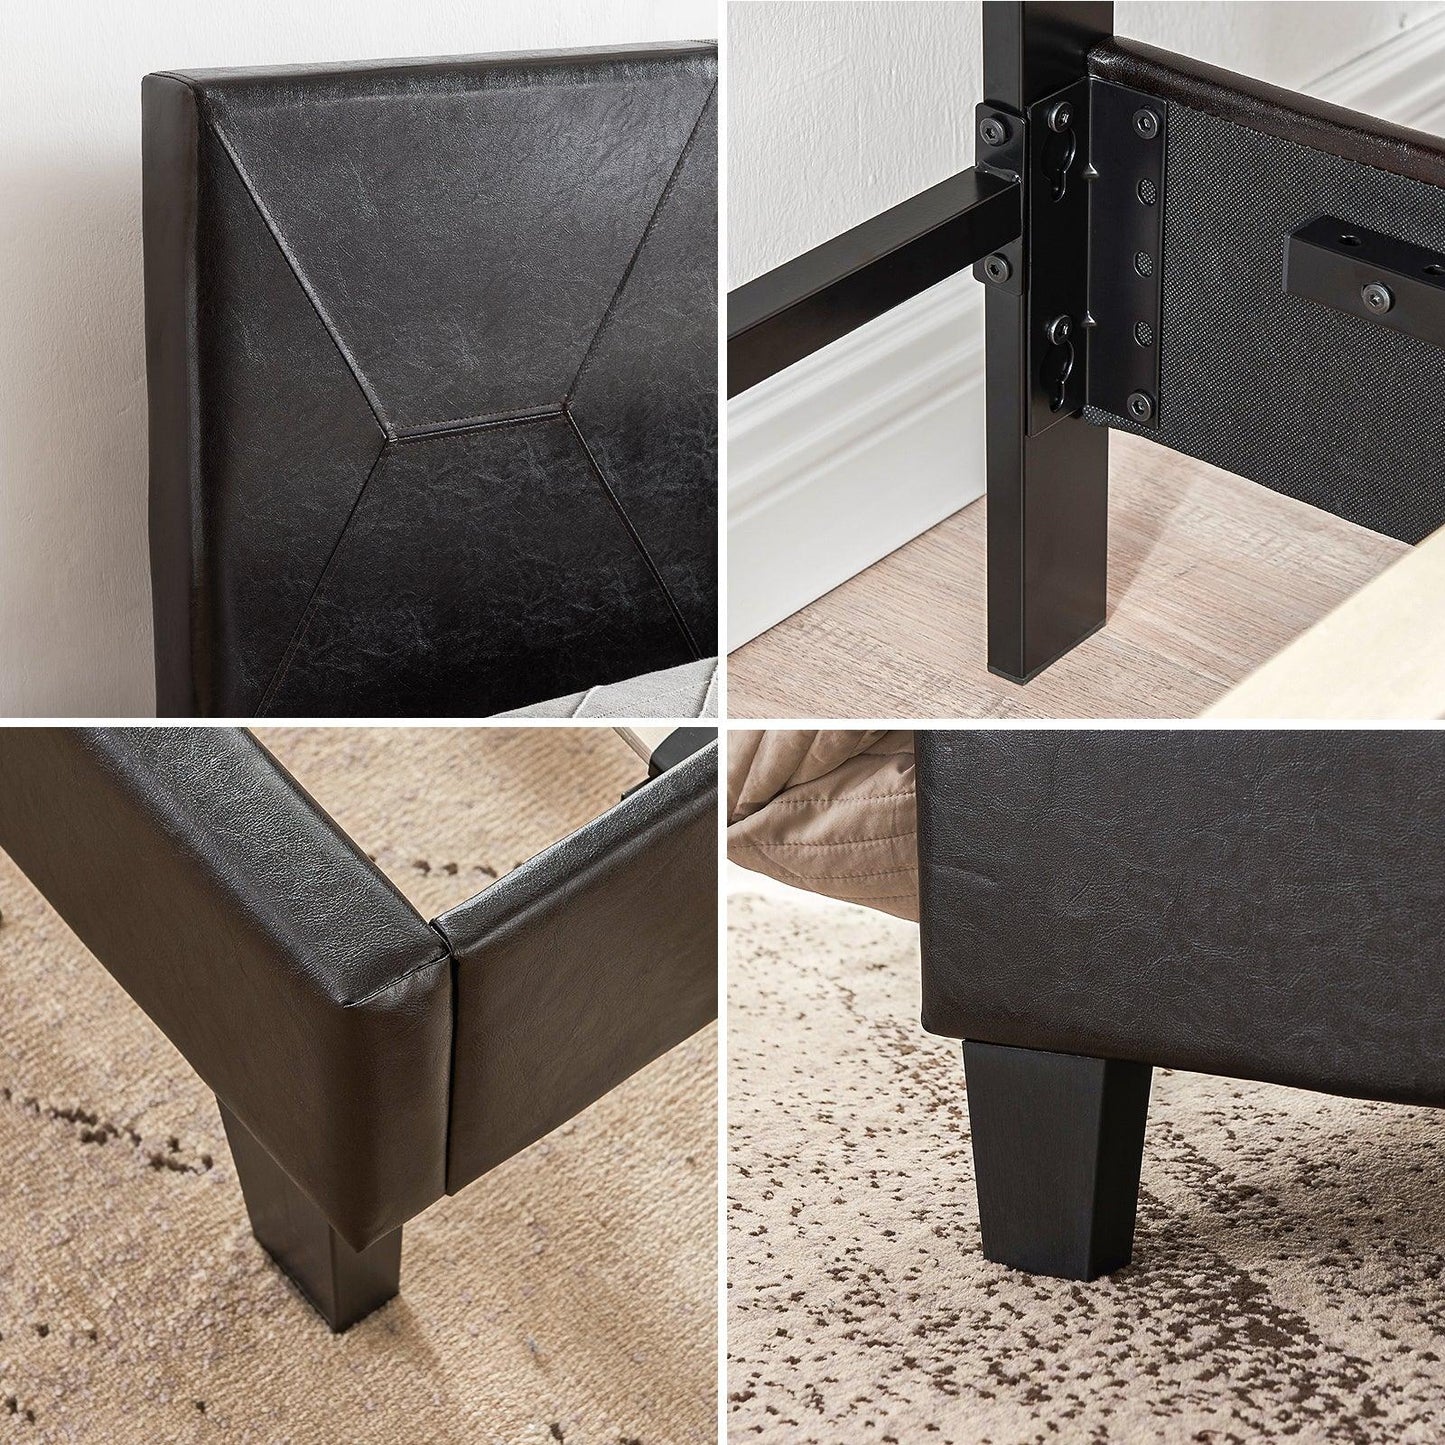 Queen Size Upholstered Platform Bed Frame Wood Slat Support Easy Assembly Black pu - FurniFindUSA